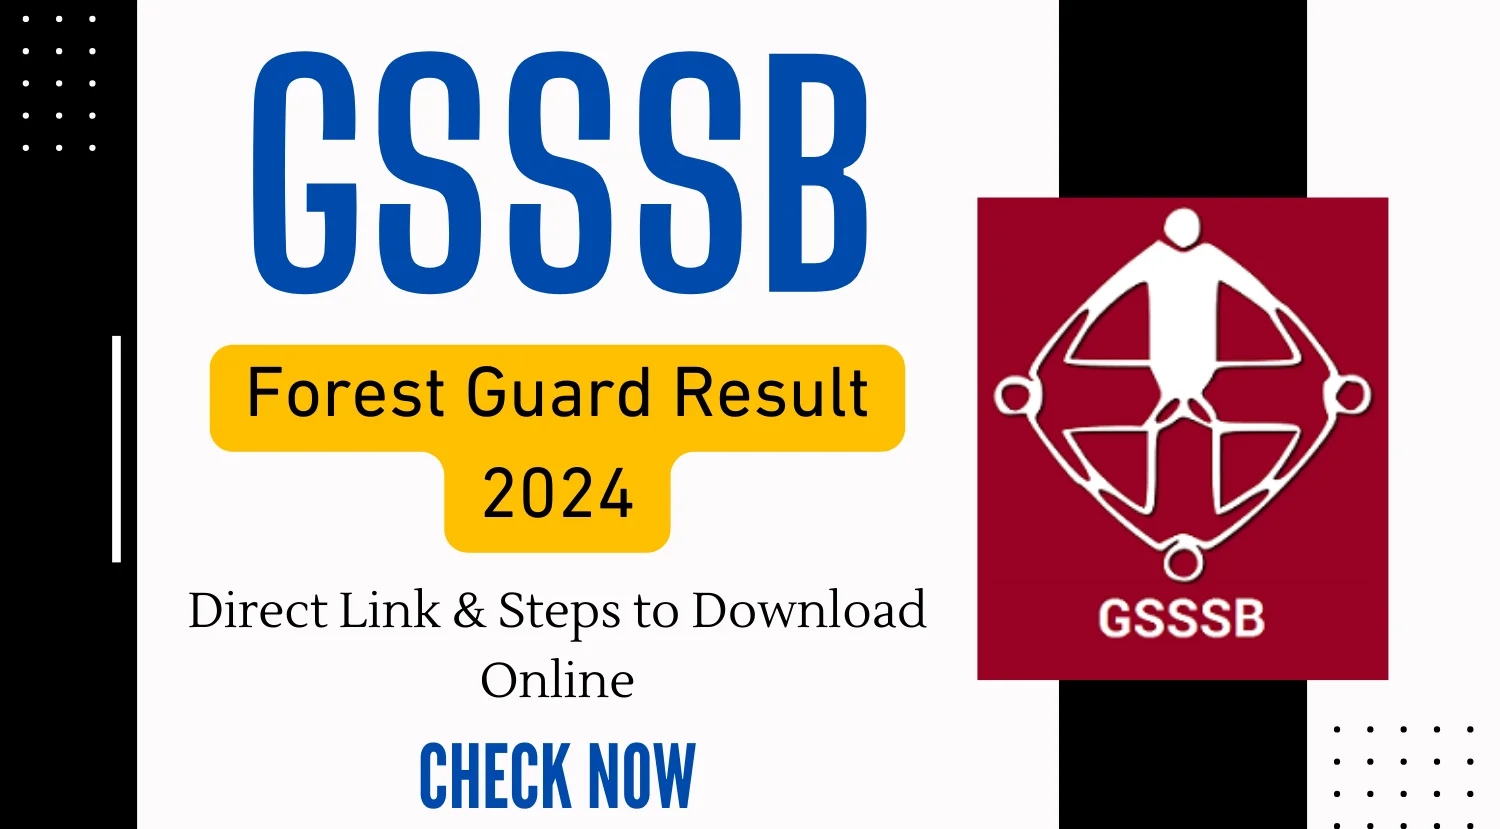 GSSSB Forest Guard Result 2024 Direct Link Steps to Download Online